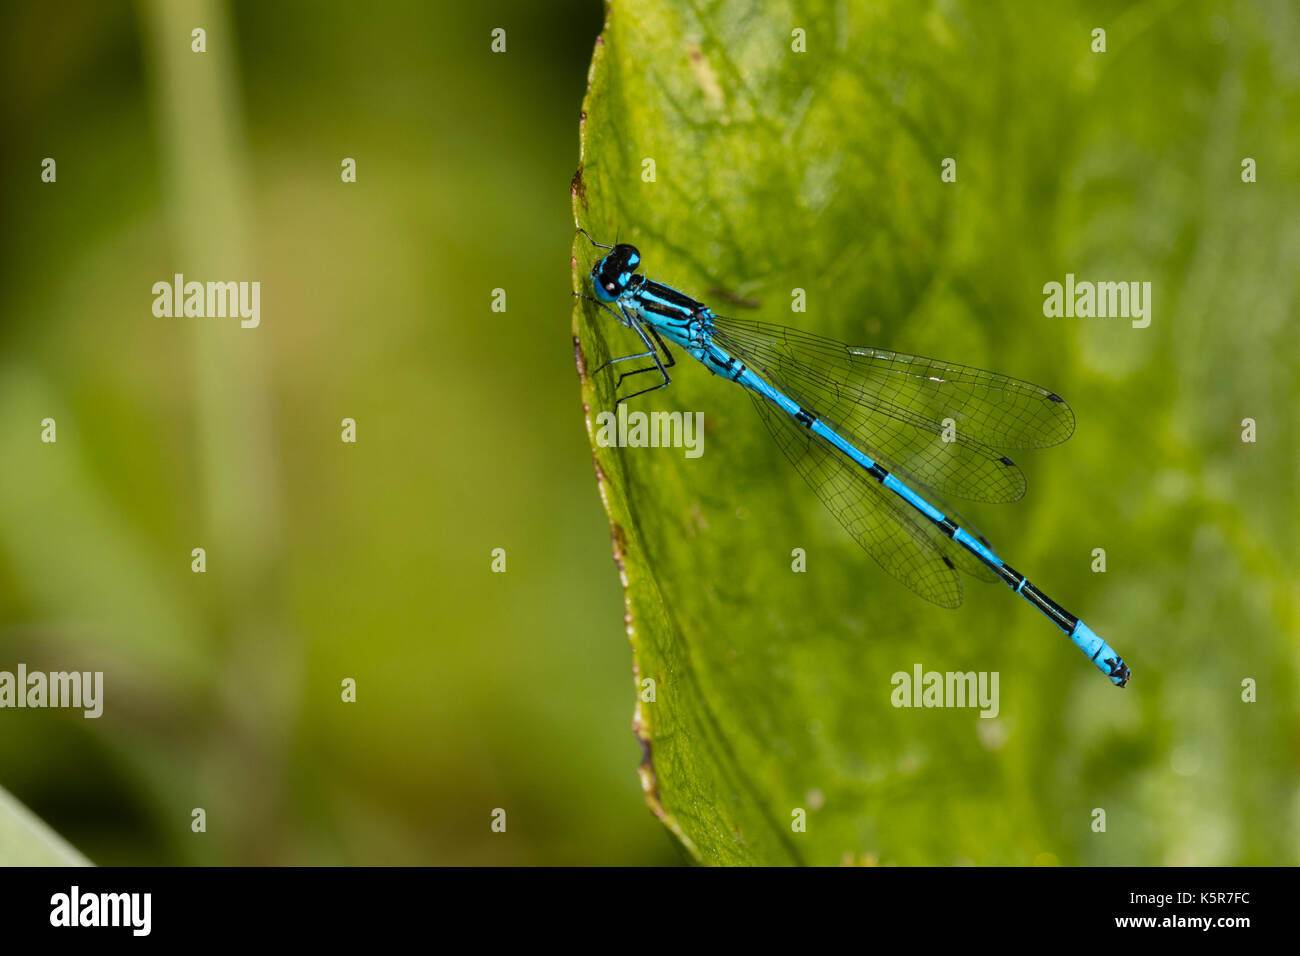 Maschio blu azzurro danselfly, Coenagrion puella in appoggio sul bordo della piscina la vegetazione Foto Stock